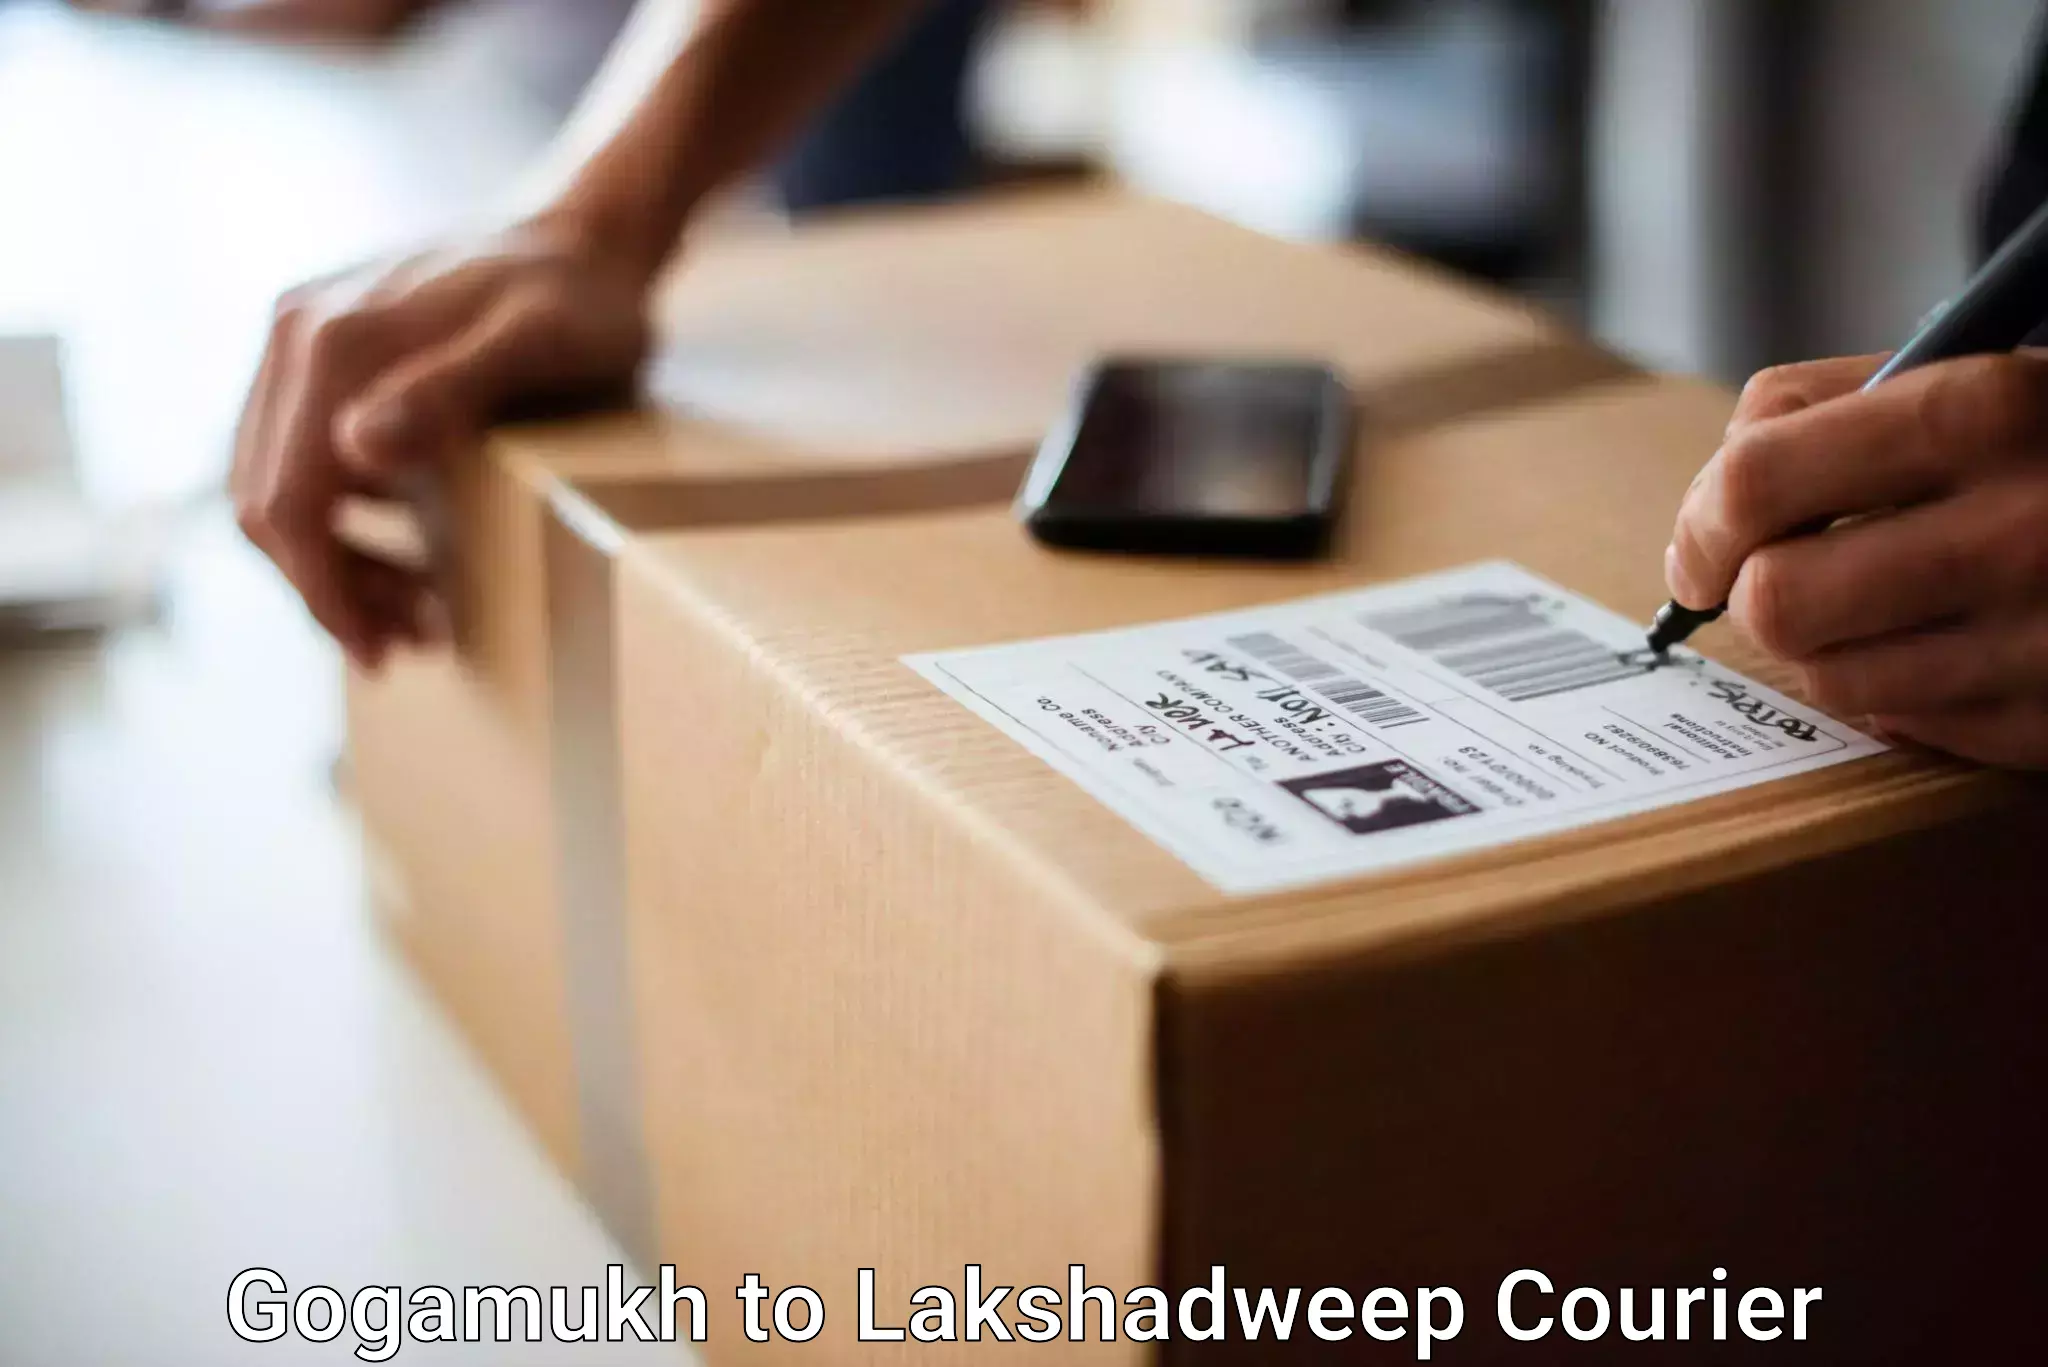 Luggage delivery logistics Gogamukh to Lakshadweep